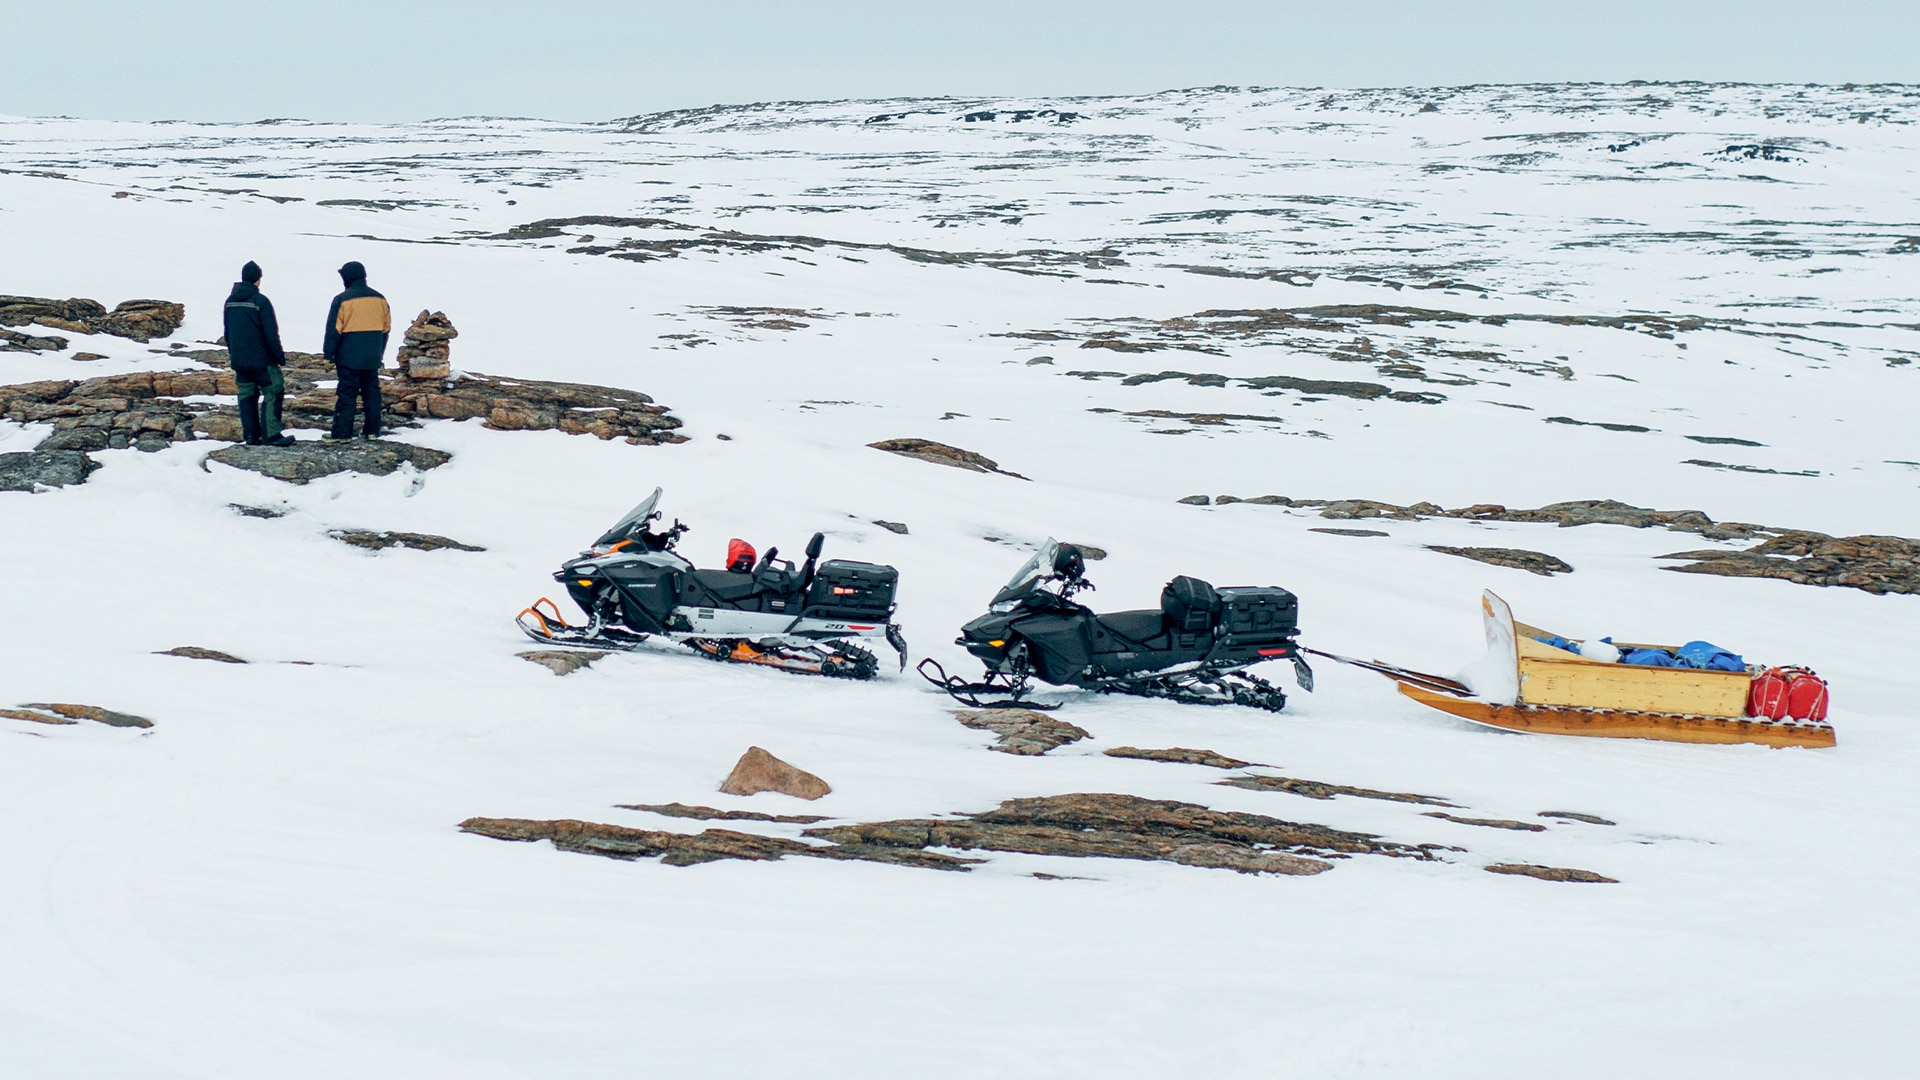 Ski-Doo Rad Rides EP4 - Ice Fishing in Nunavut